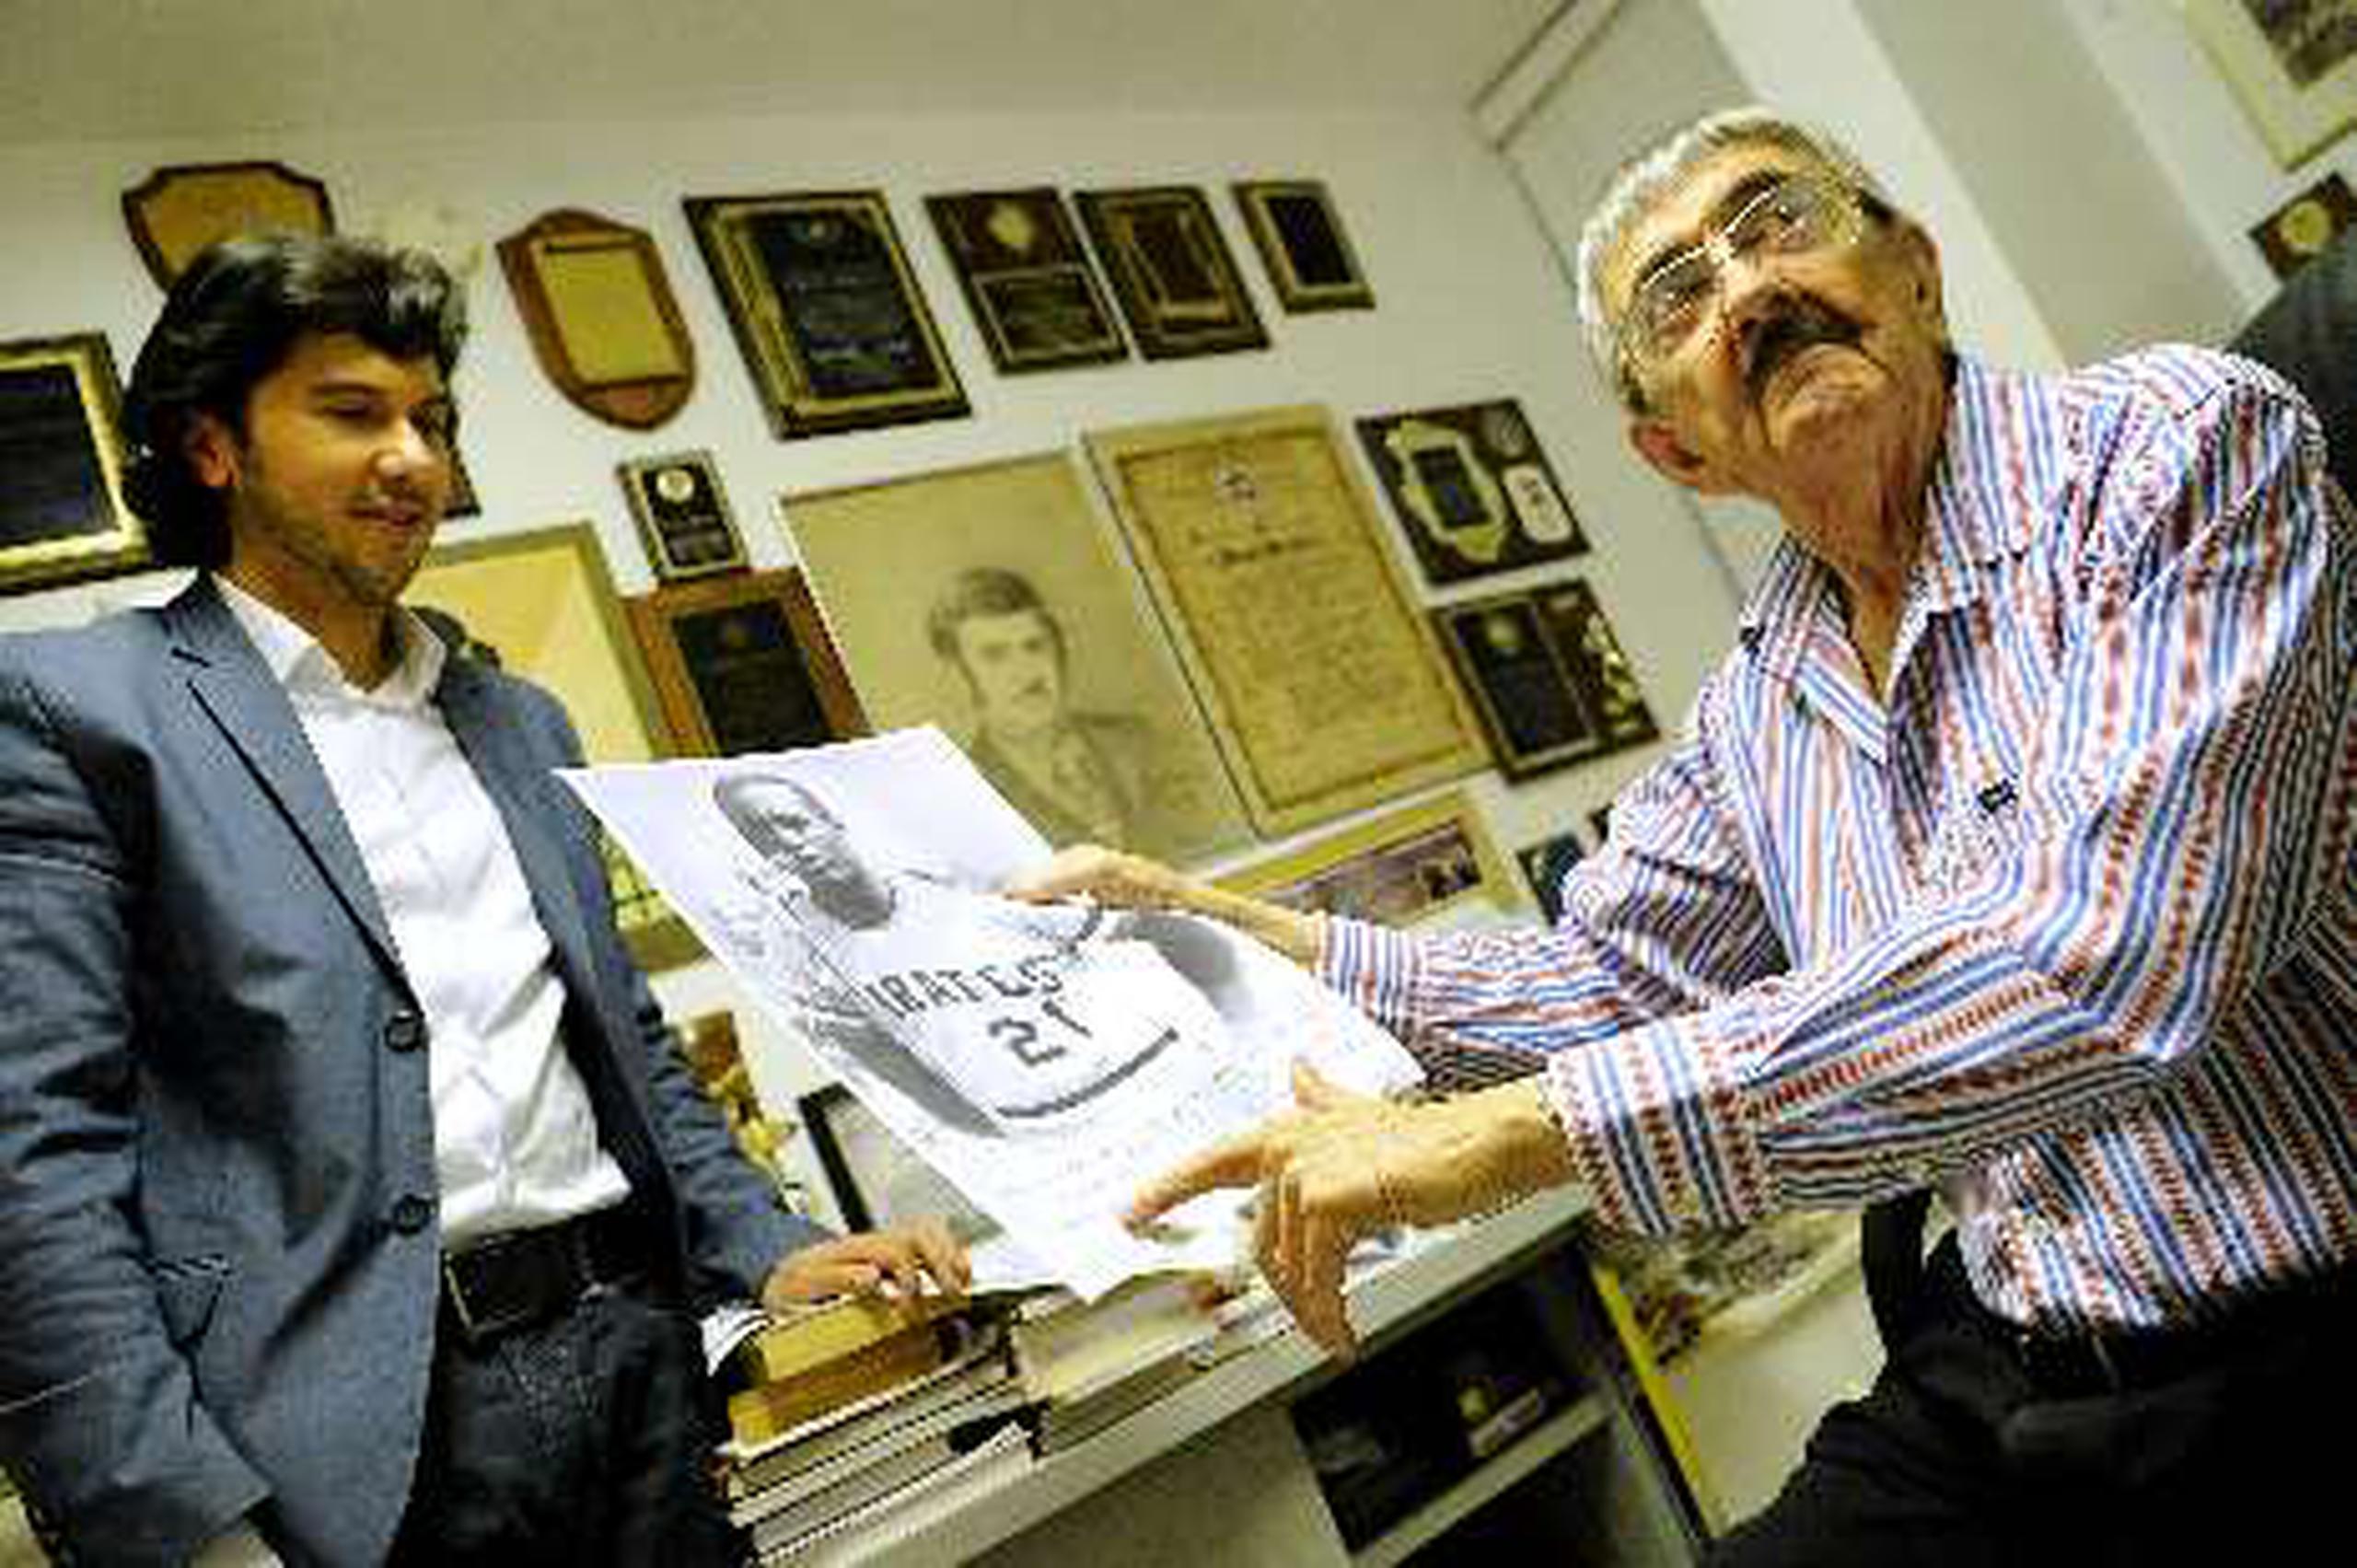 En su primer encuentro cara a cara, el periodista   Ramiro Martínez le detalló  al actor Manuel Morán  muchos episodios sobre la vida de Roberto Clemente.